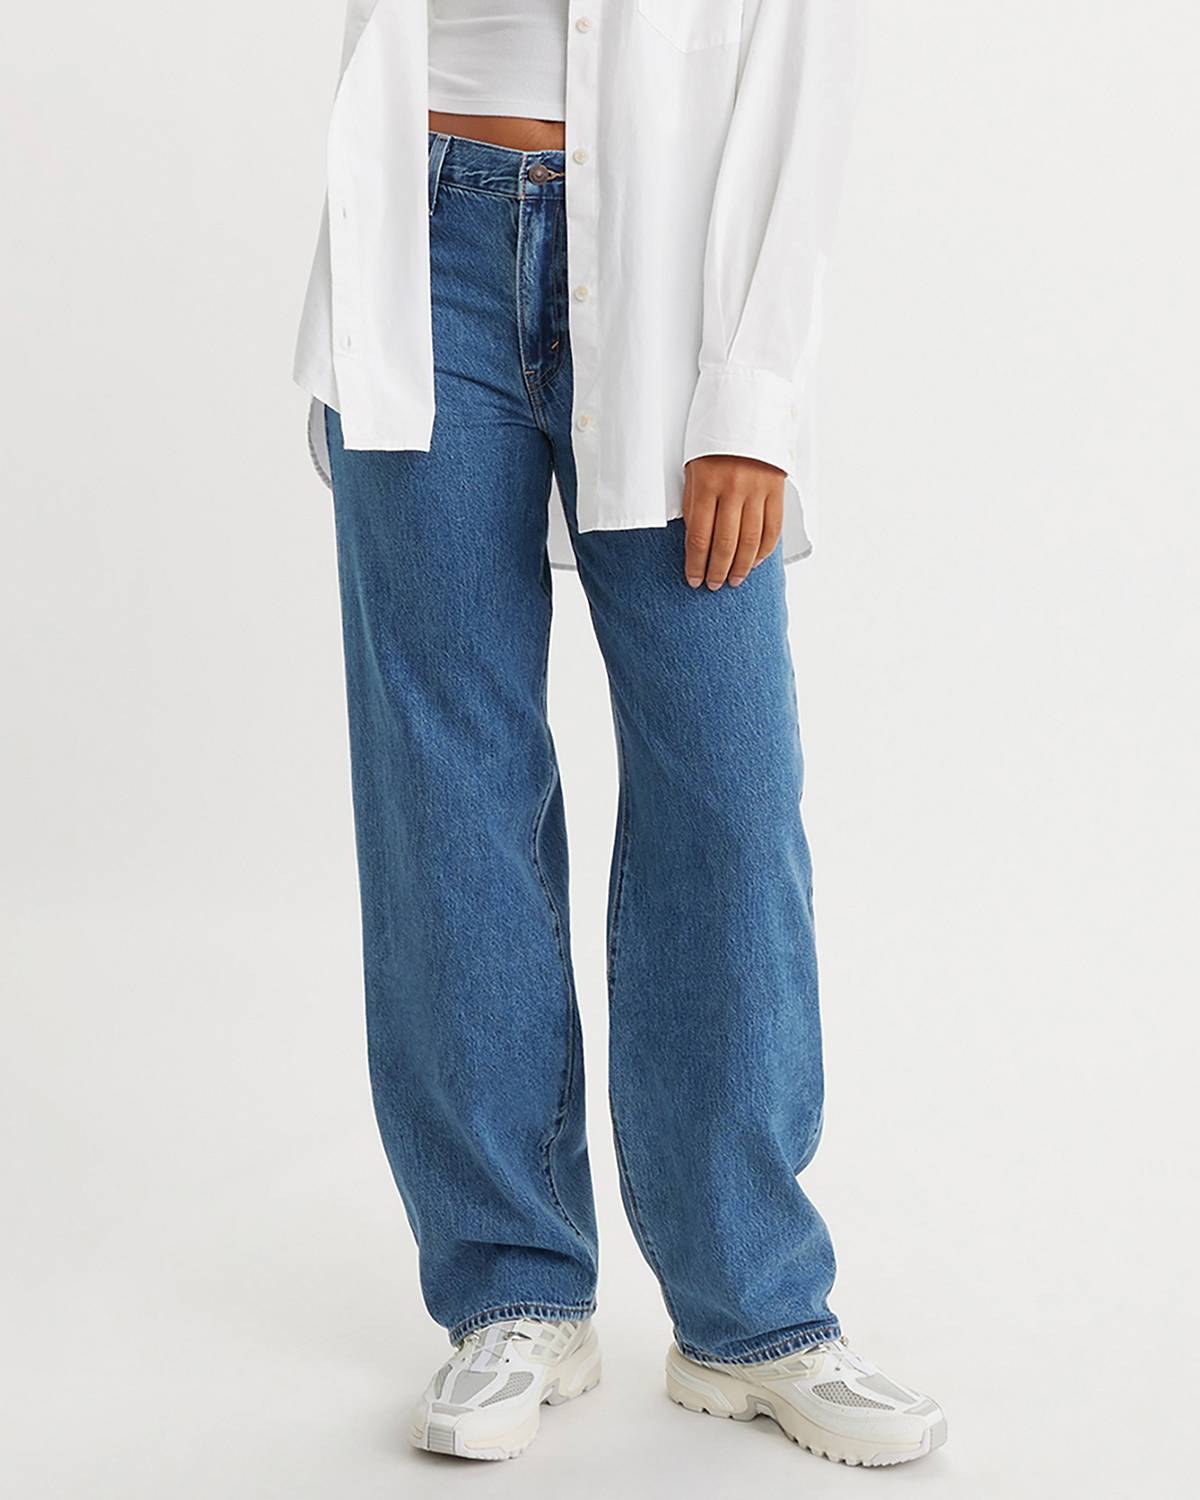 Female model wearing jeans.